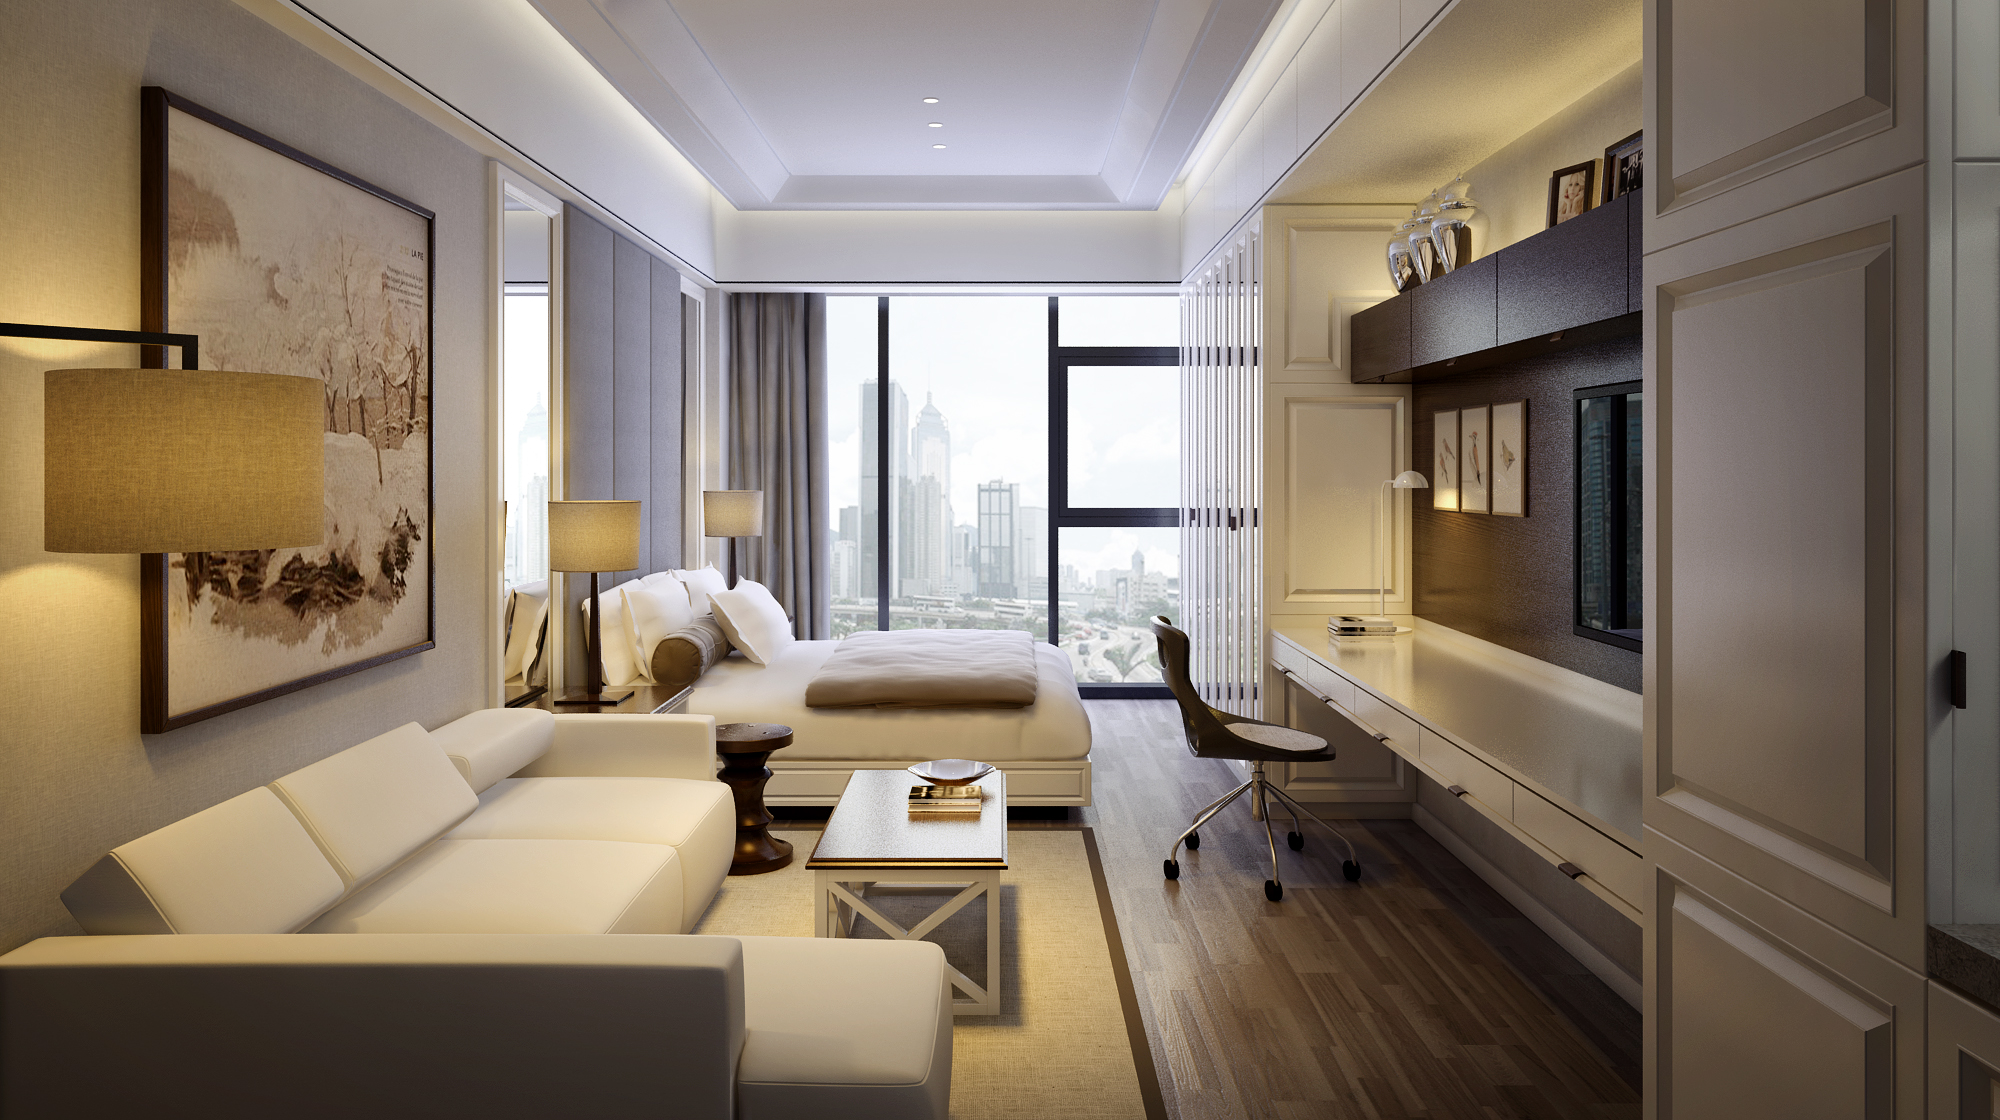 10-15万装修,一居室装修,40平米装修,小户型装修,客厅,现代简约风格,沙发,白色